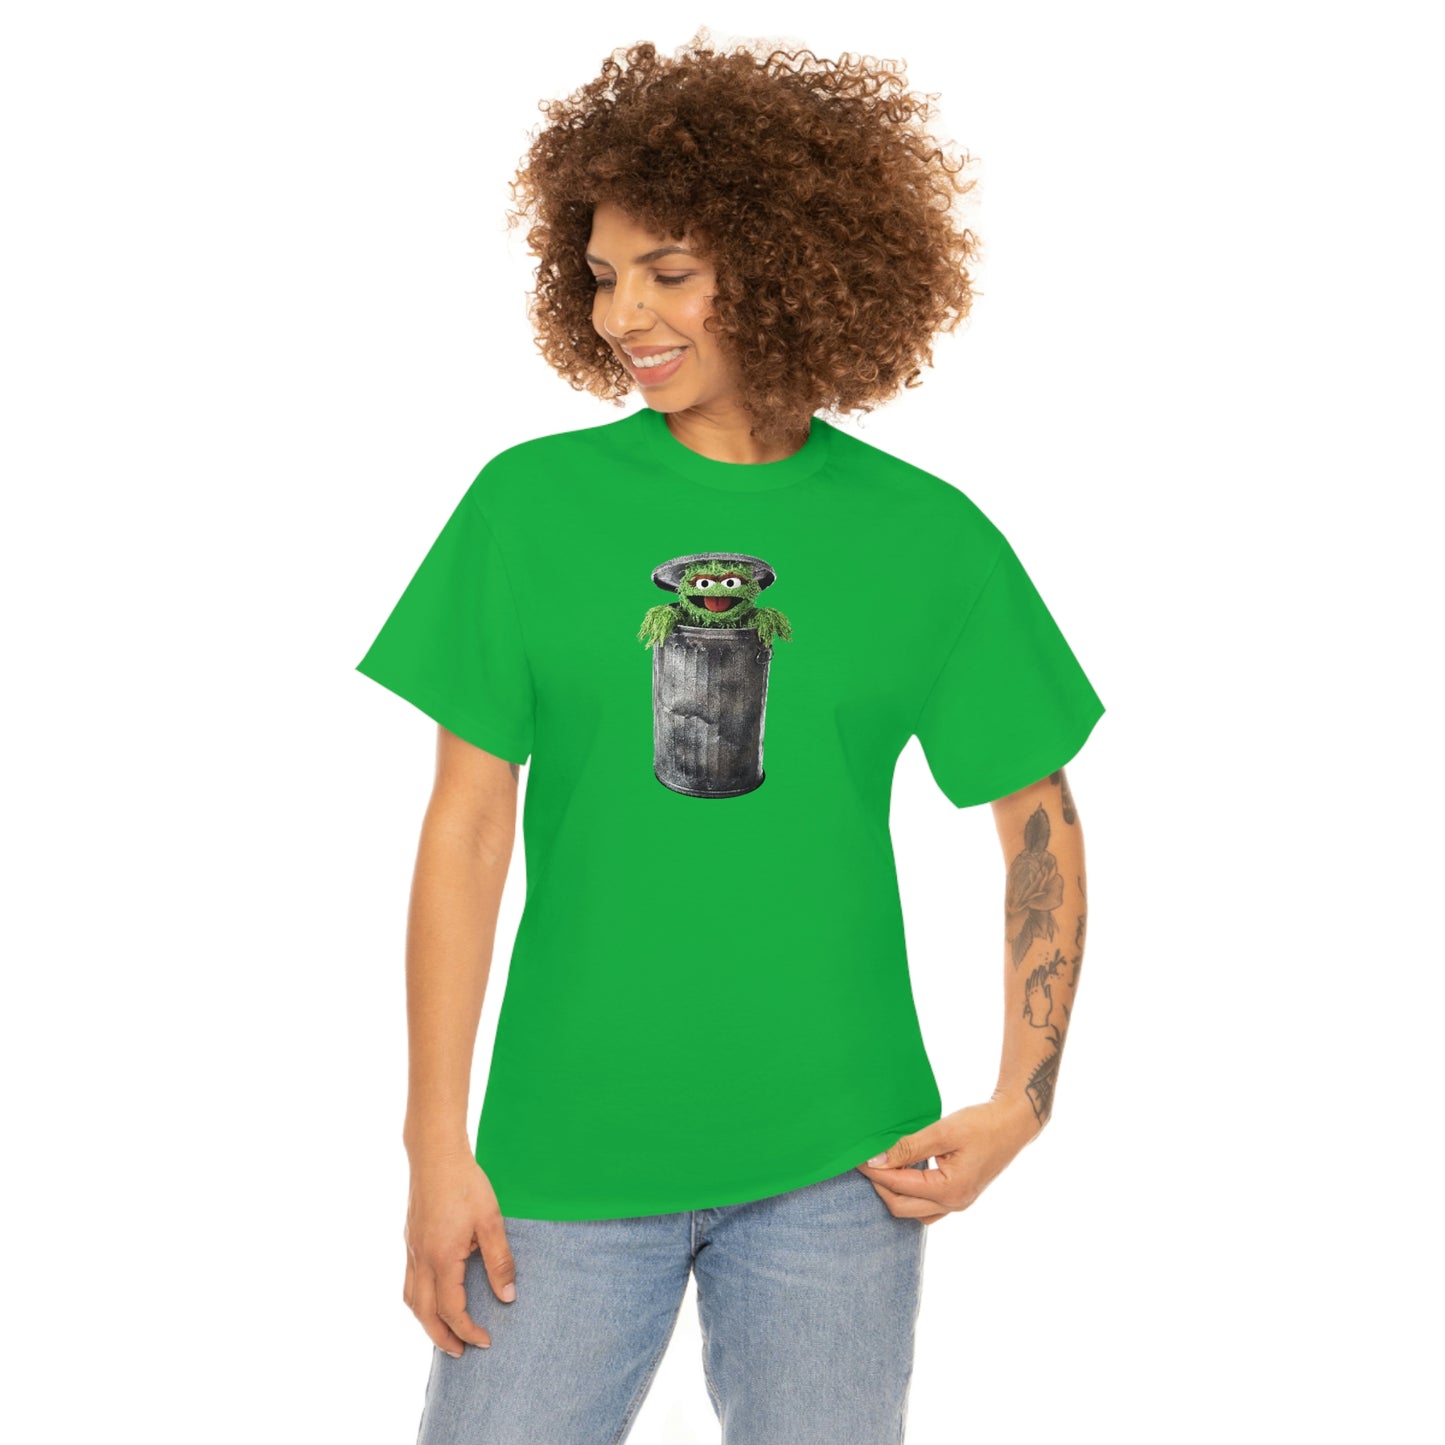 Oscar the Grouch T-Shirt